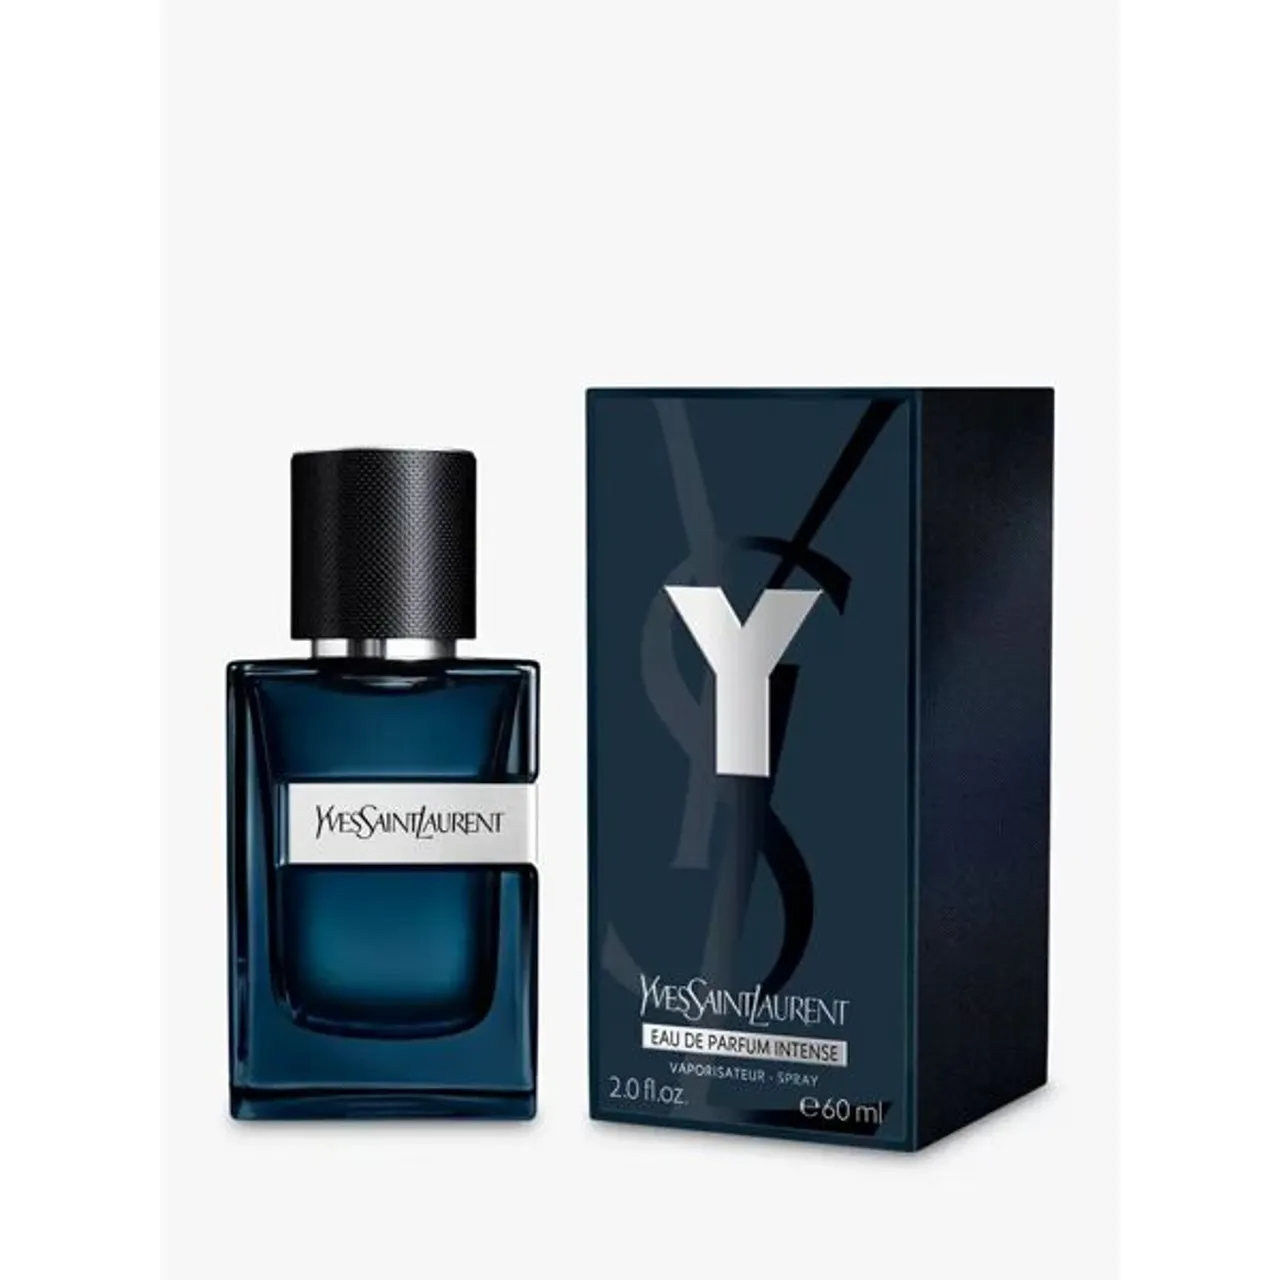 Yves Saint Laurent Y Eau de Parfum Intense - Blue - Female - Size: 60ml